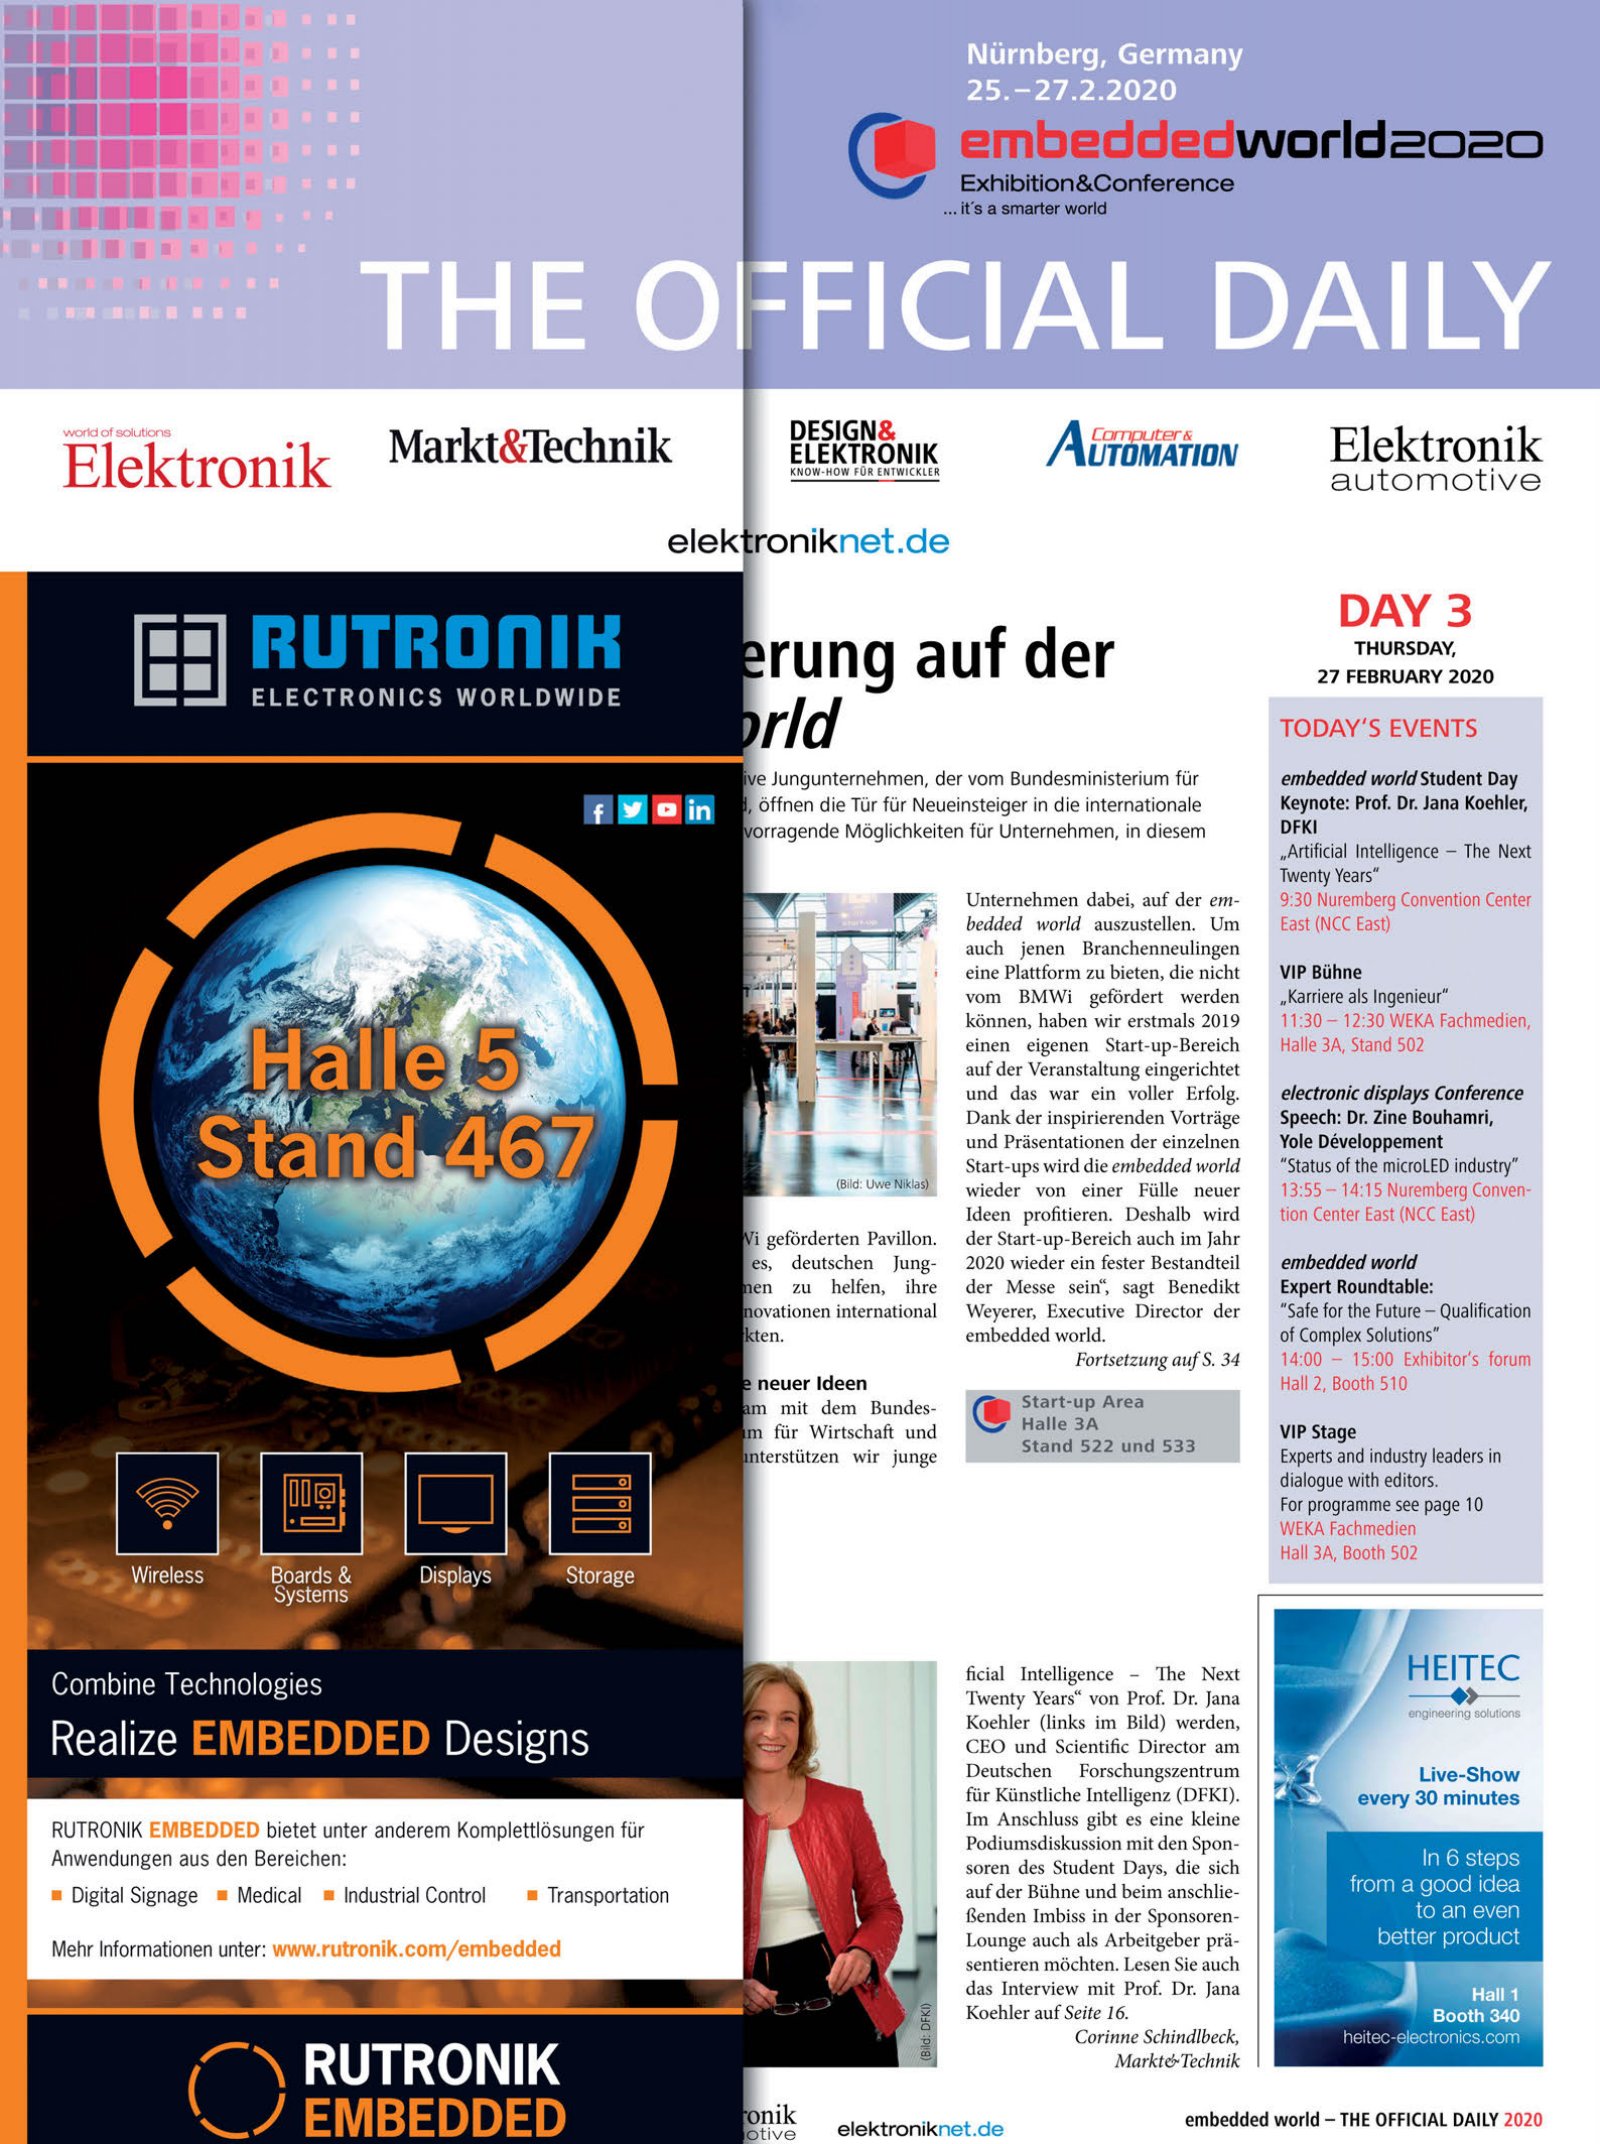 Tageszeitung embedded world 2020 Tag 3 Digital